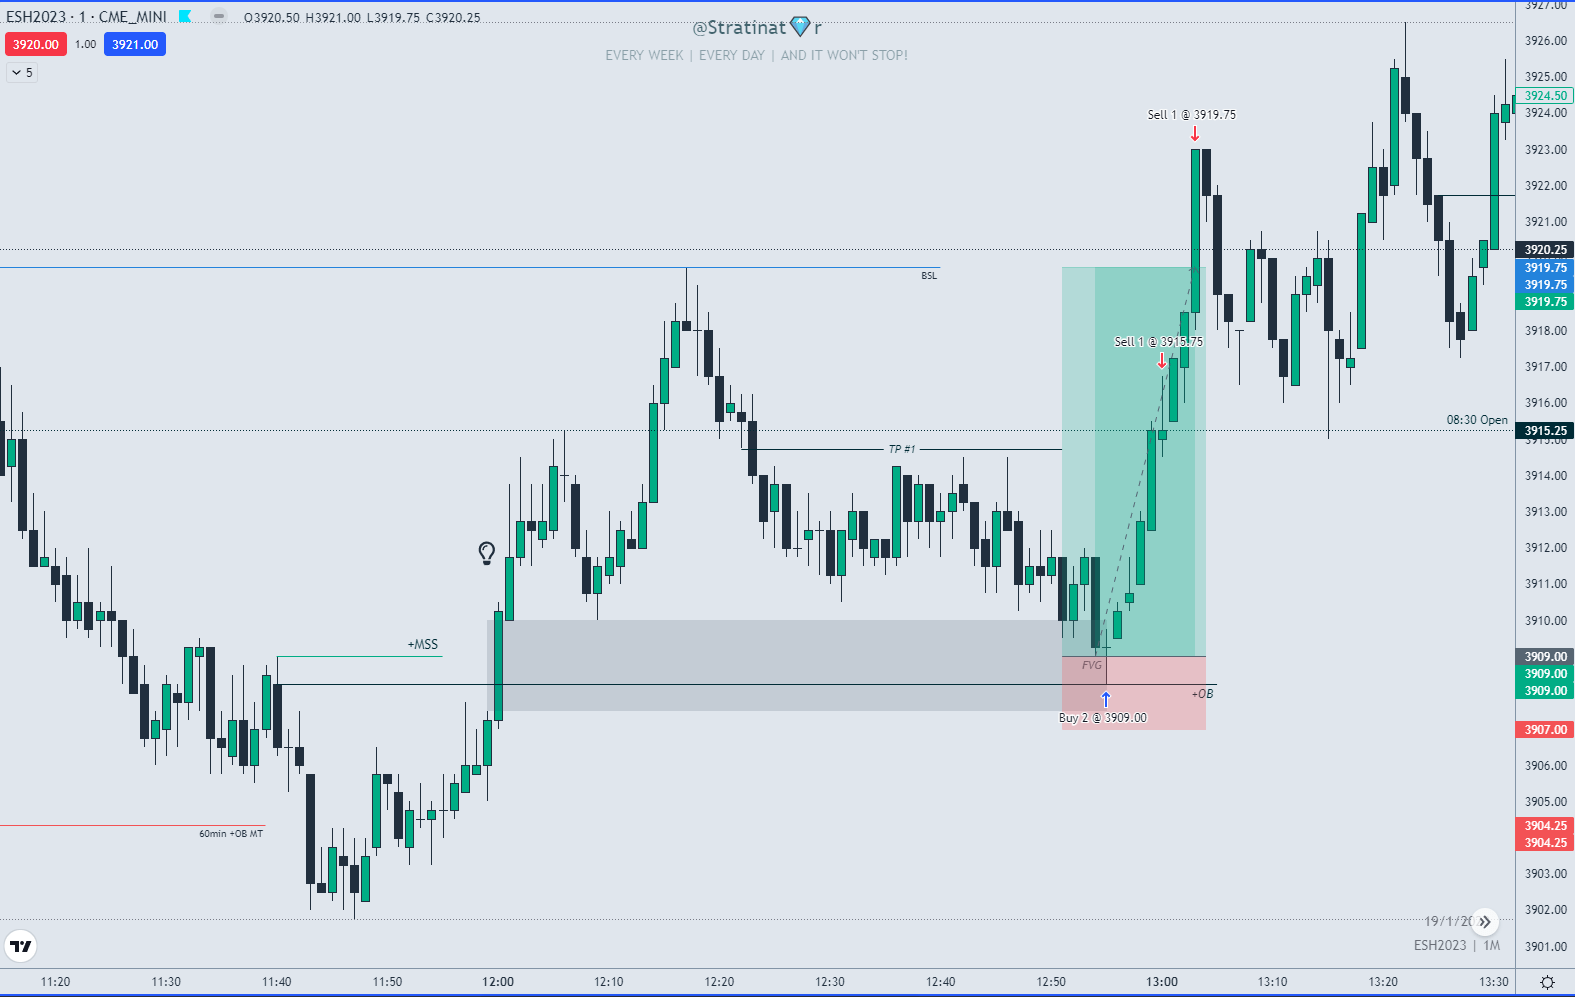 1min ES chart on TradingView